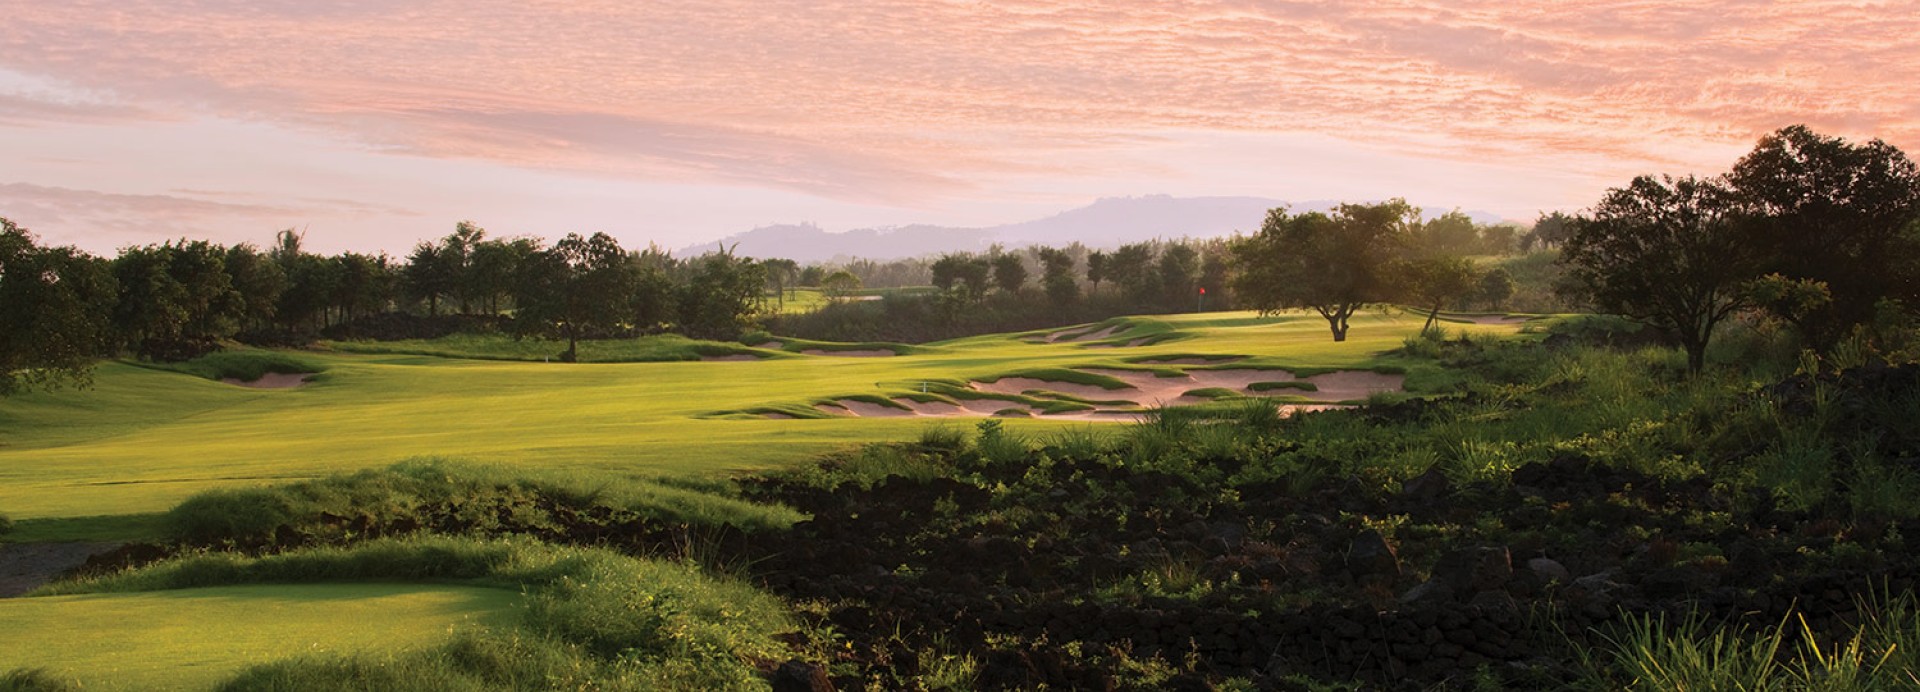 Mission Hills - Haikou - Lava Fields Course  | Golfové zájezdy, golfová dovolená, luxusní golf